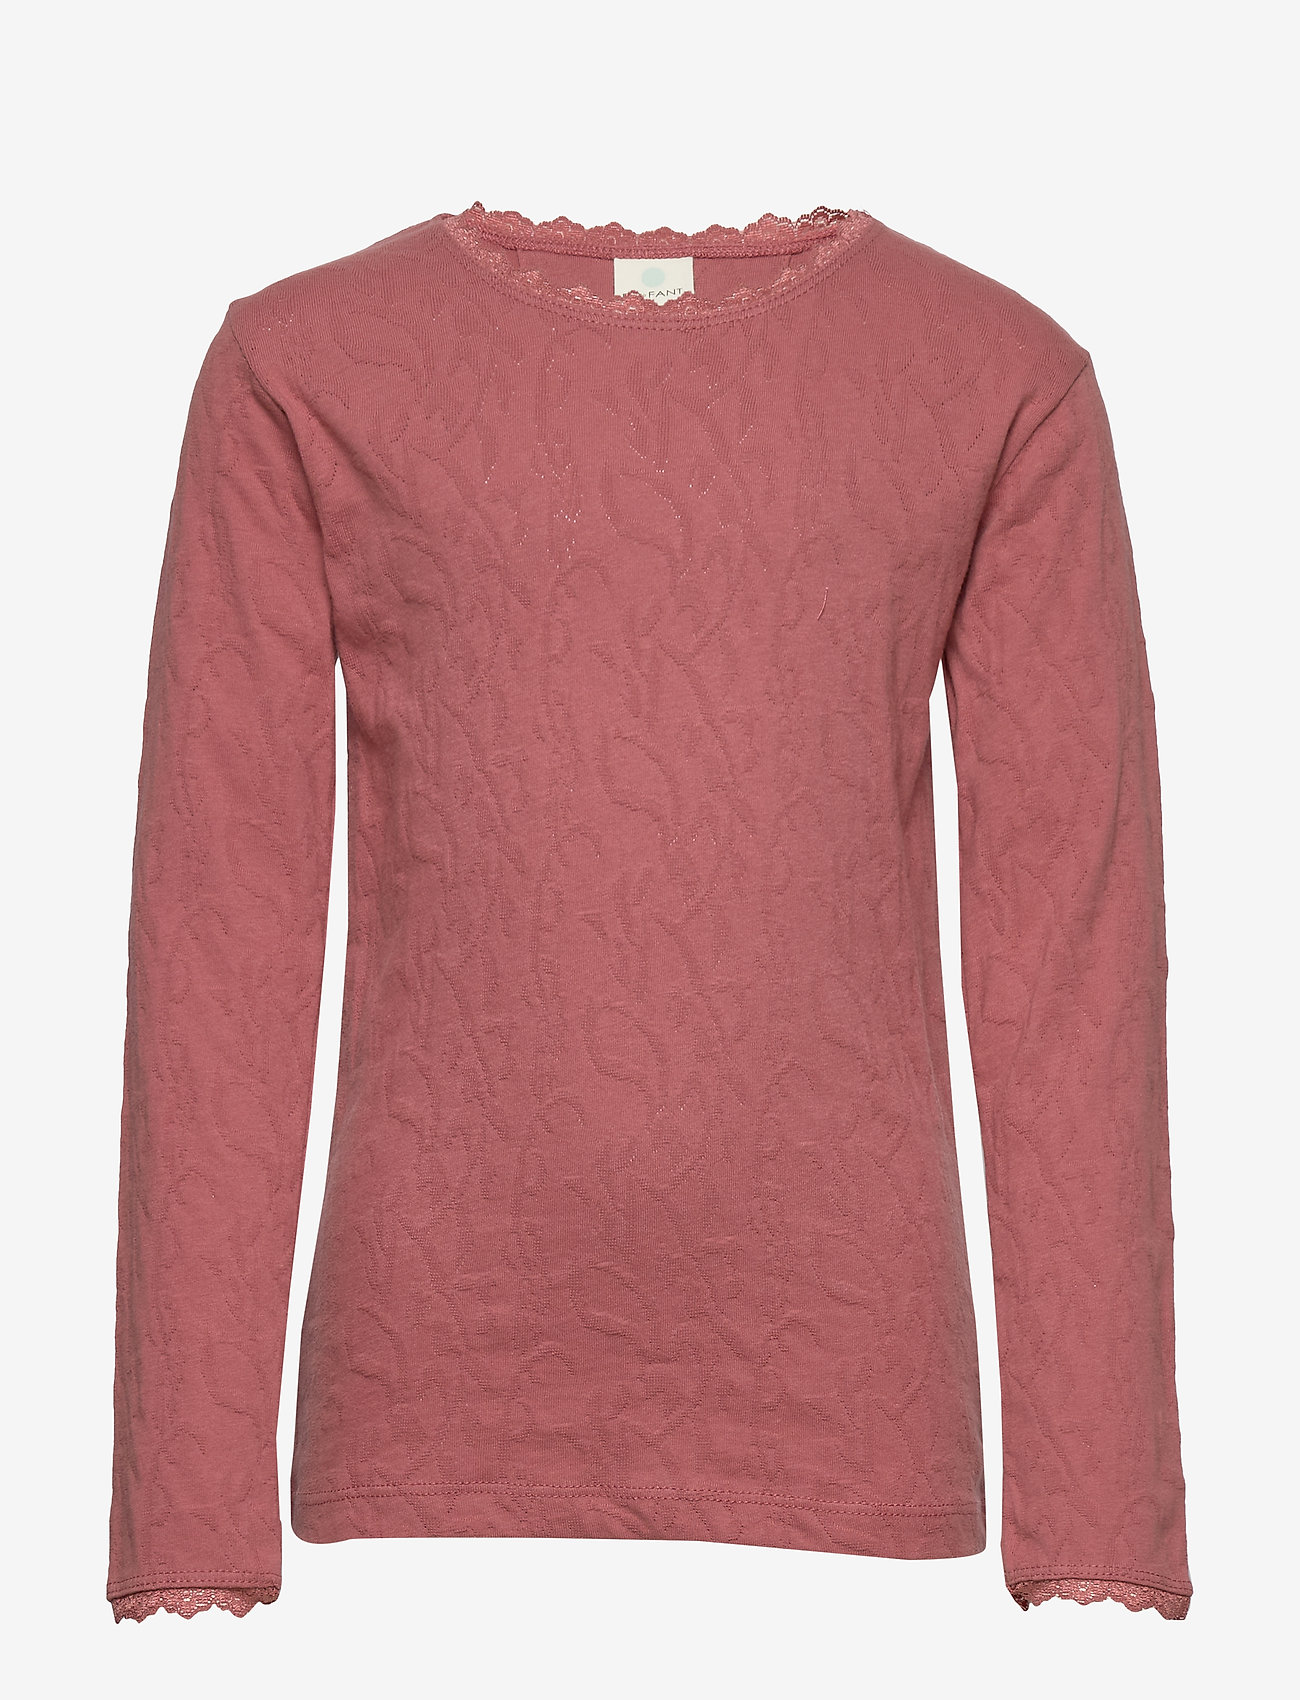 En Fant - Horizon LS Top - langermede t-skjorter - withered rose - 0